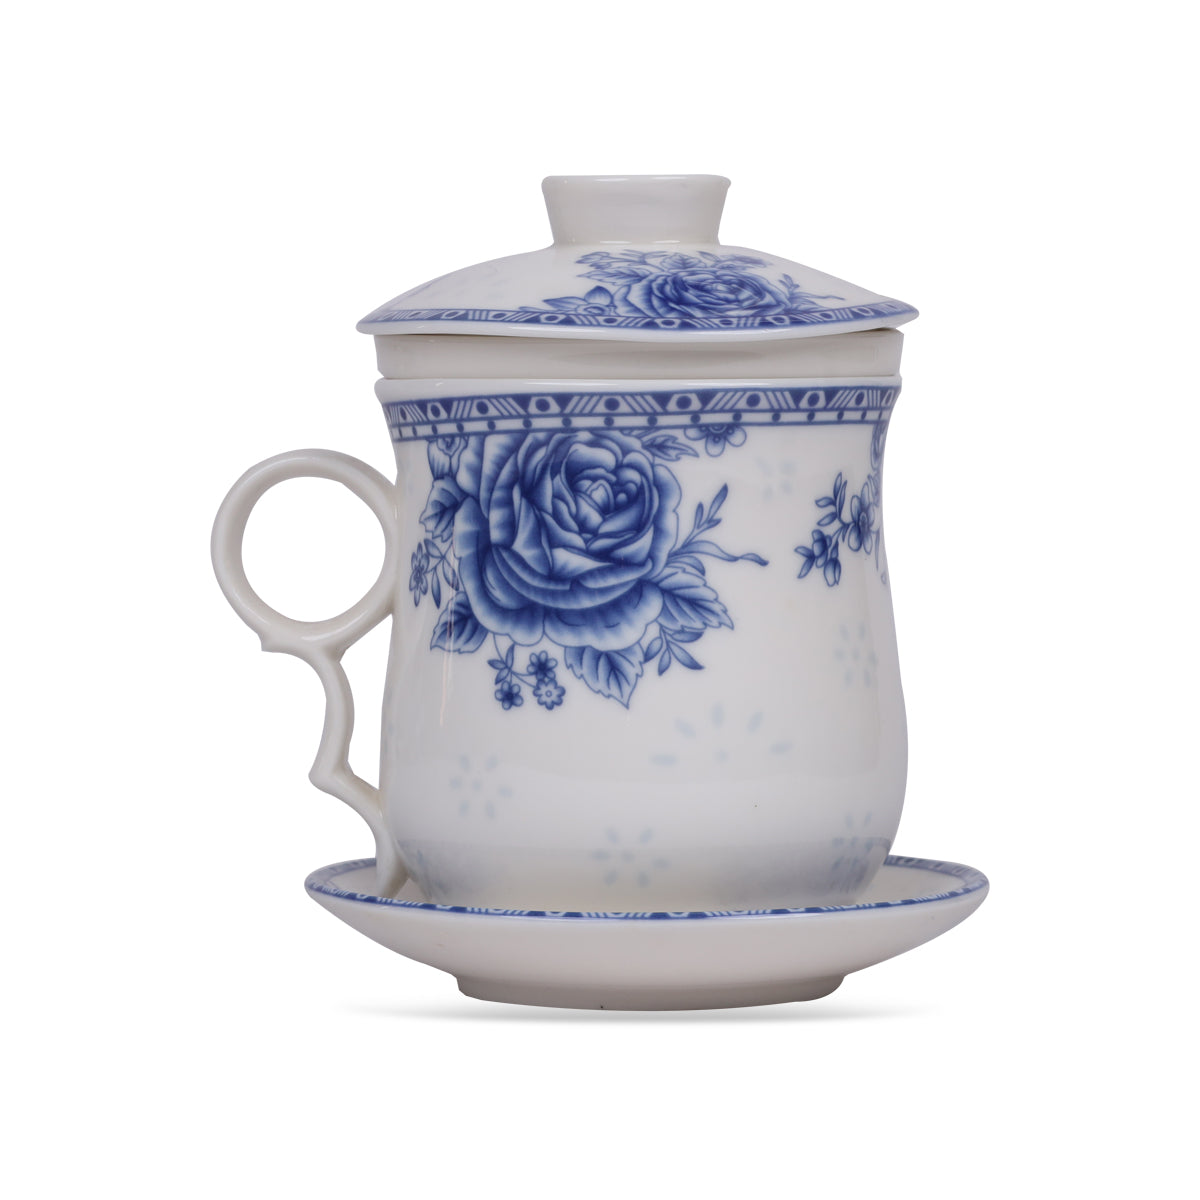 Green Tea Mug Blue Rose with Infuser, Lid, Saucer